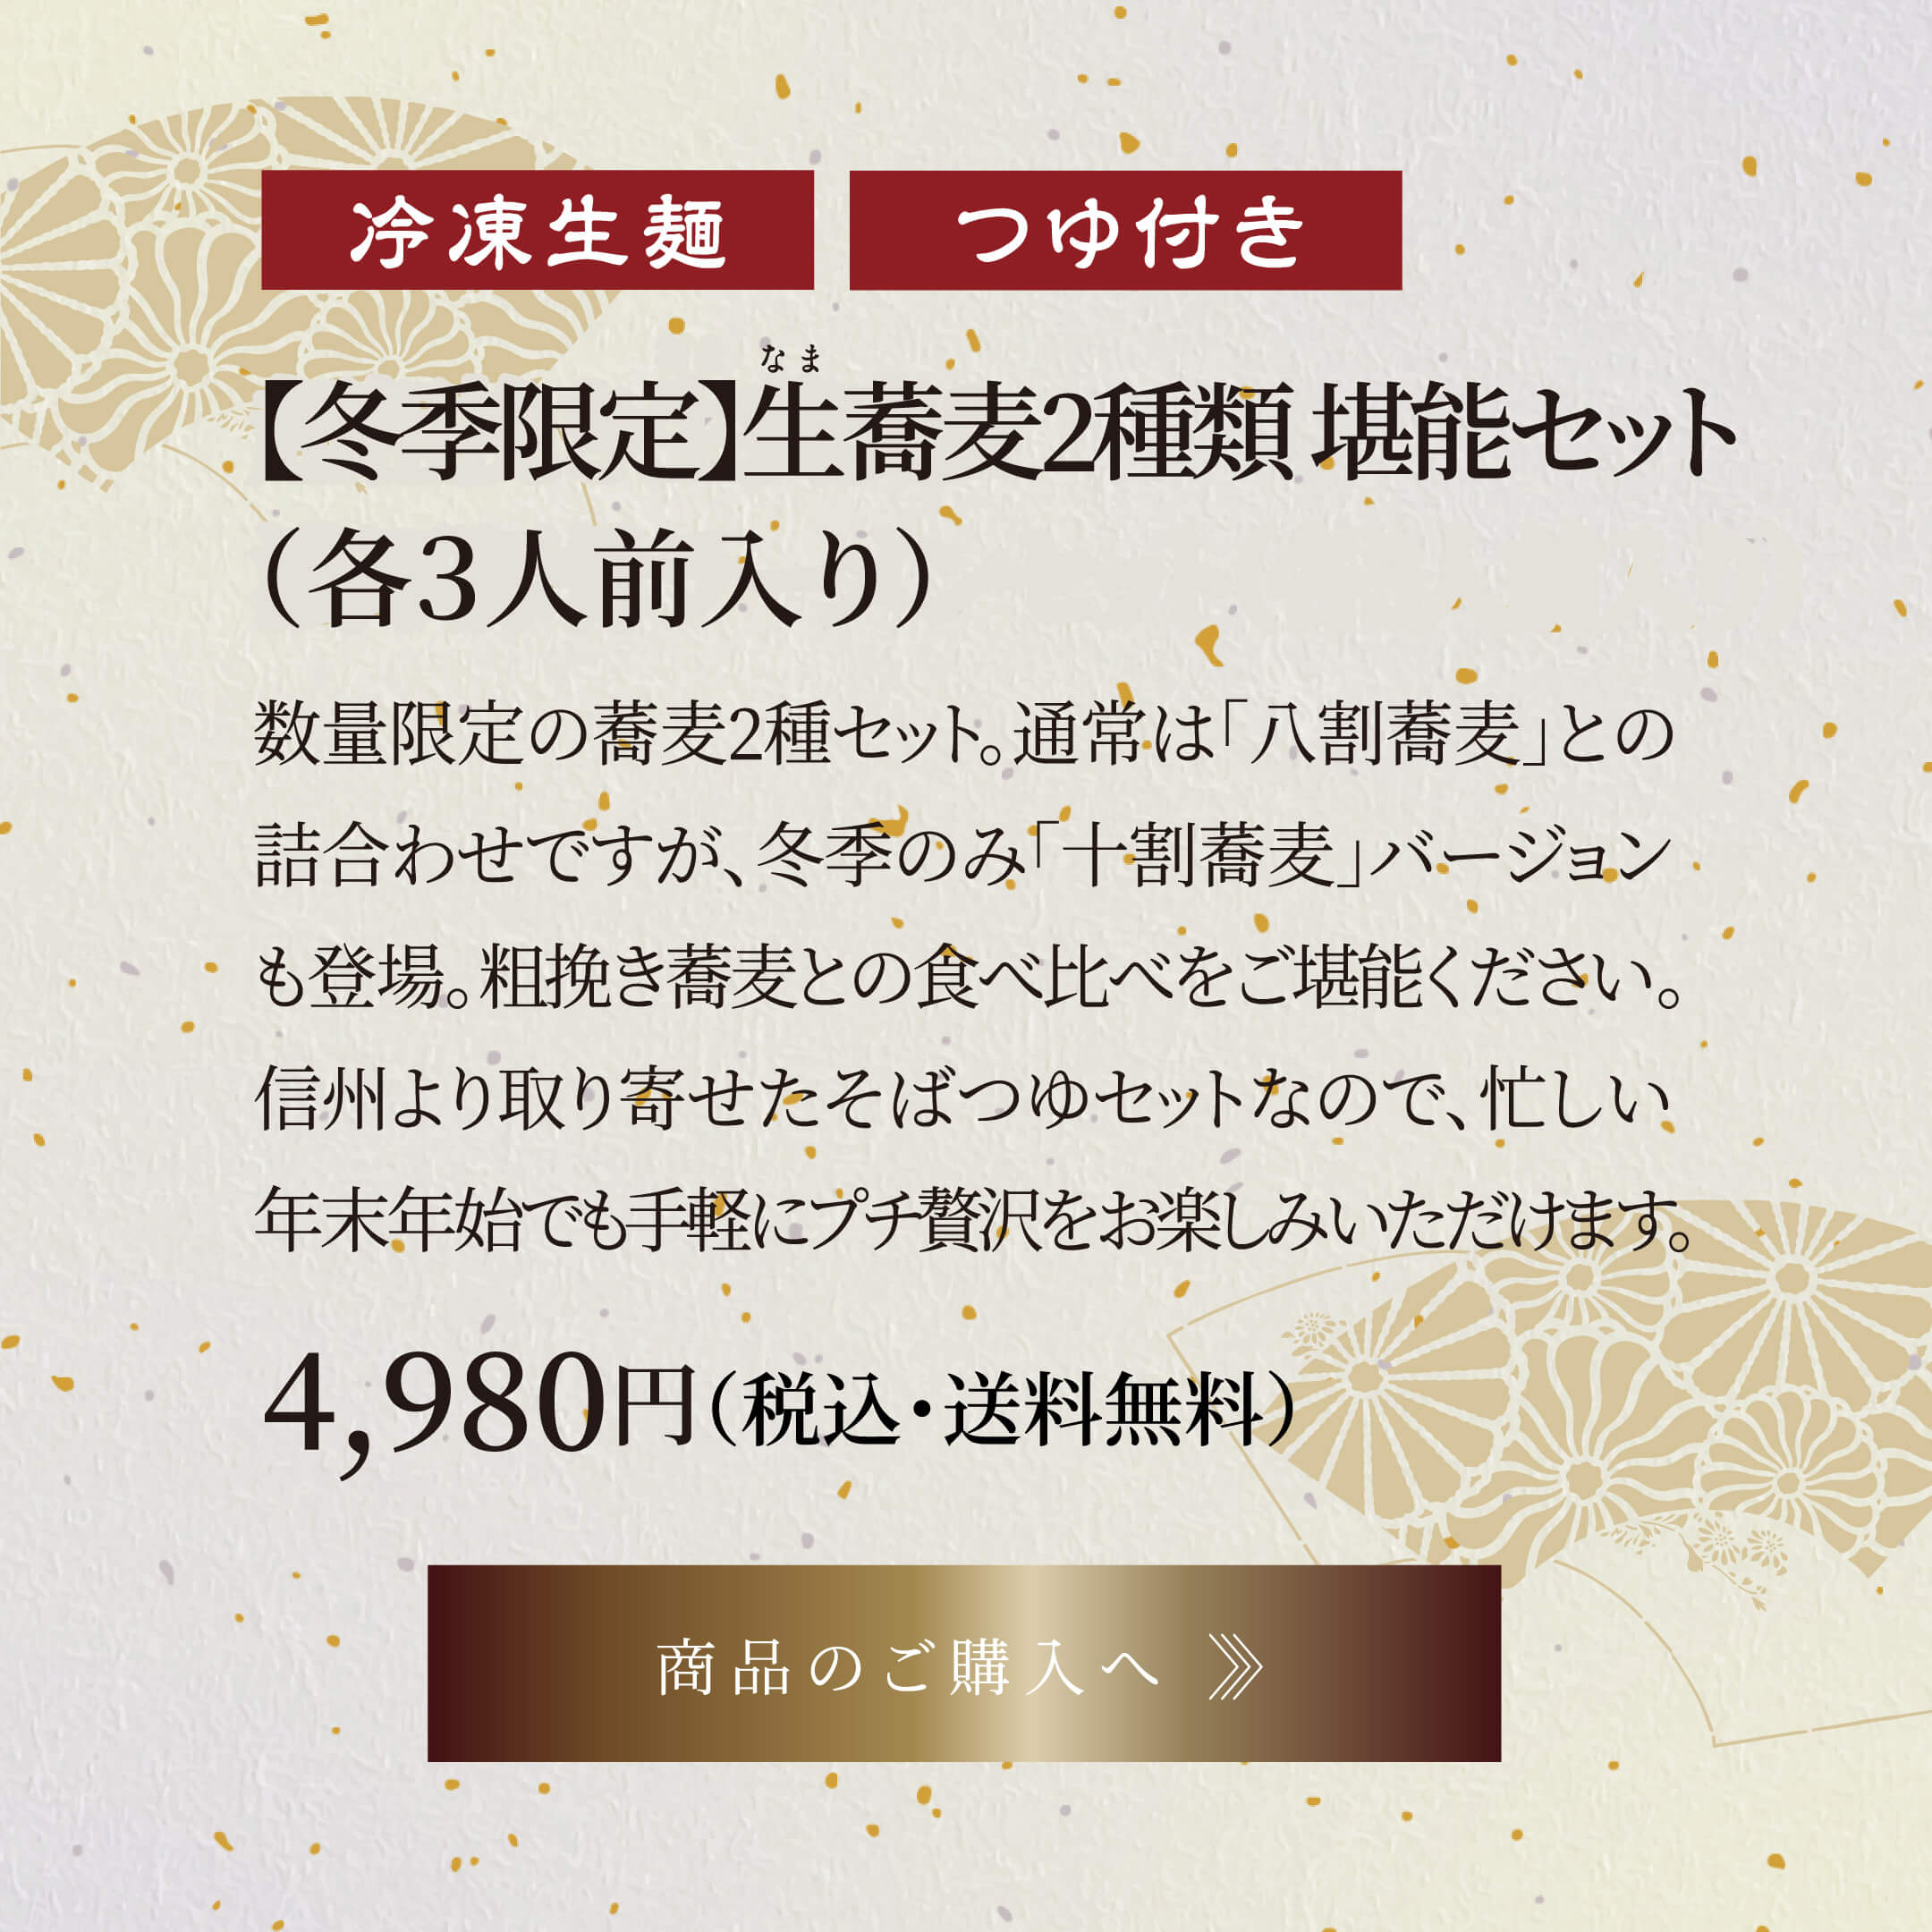 【冬期限定】生蕎麦2種類 堪能セット(各3人前入り) 4,980円(税込・送料無料)